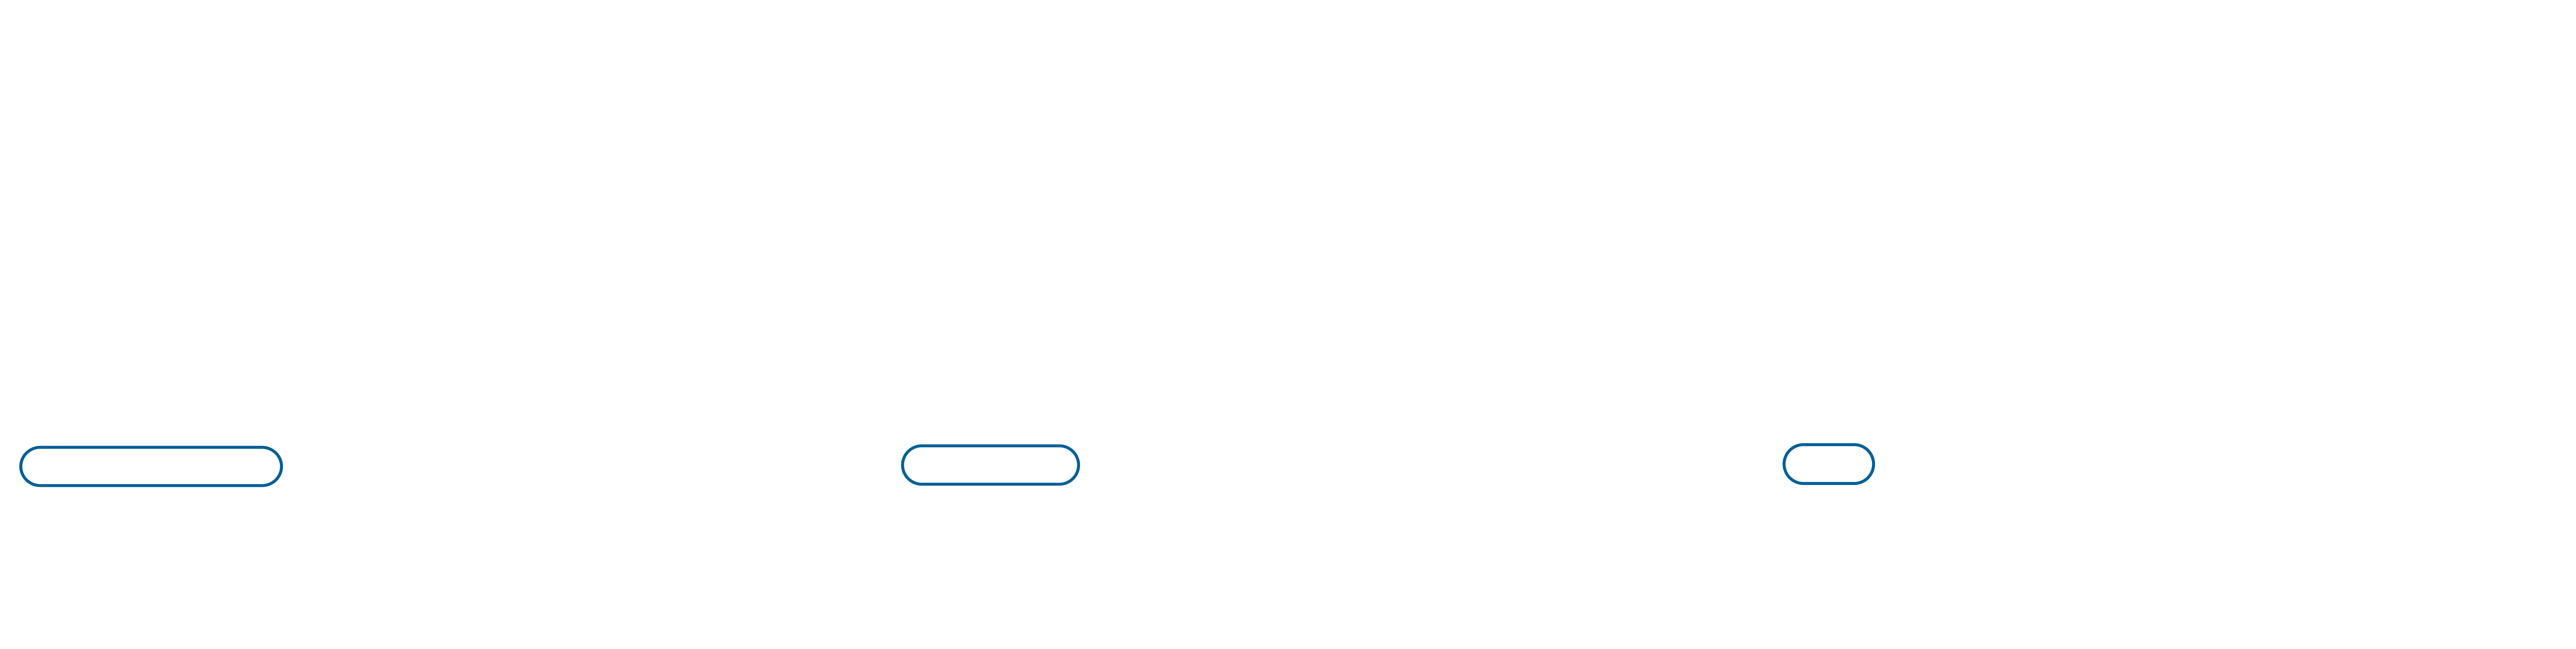 Absolut Hydrogen - boat_tanks-FR